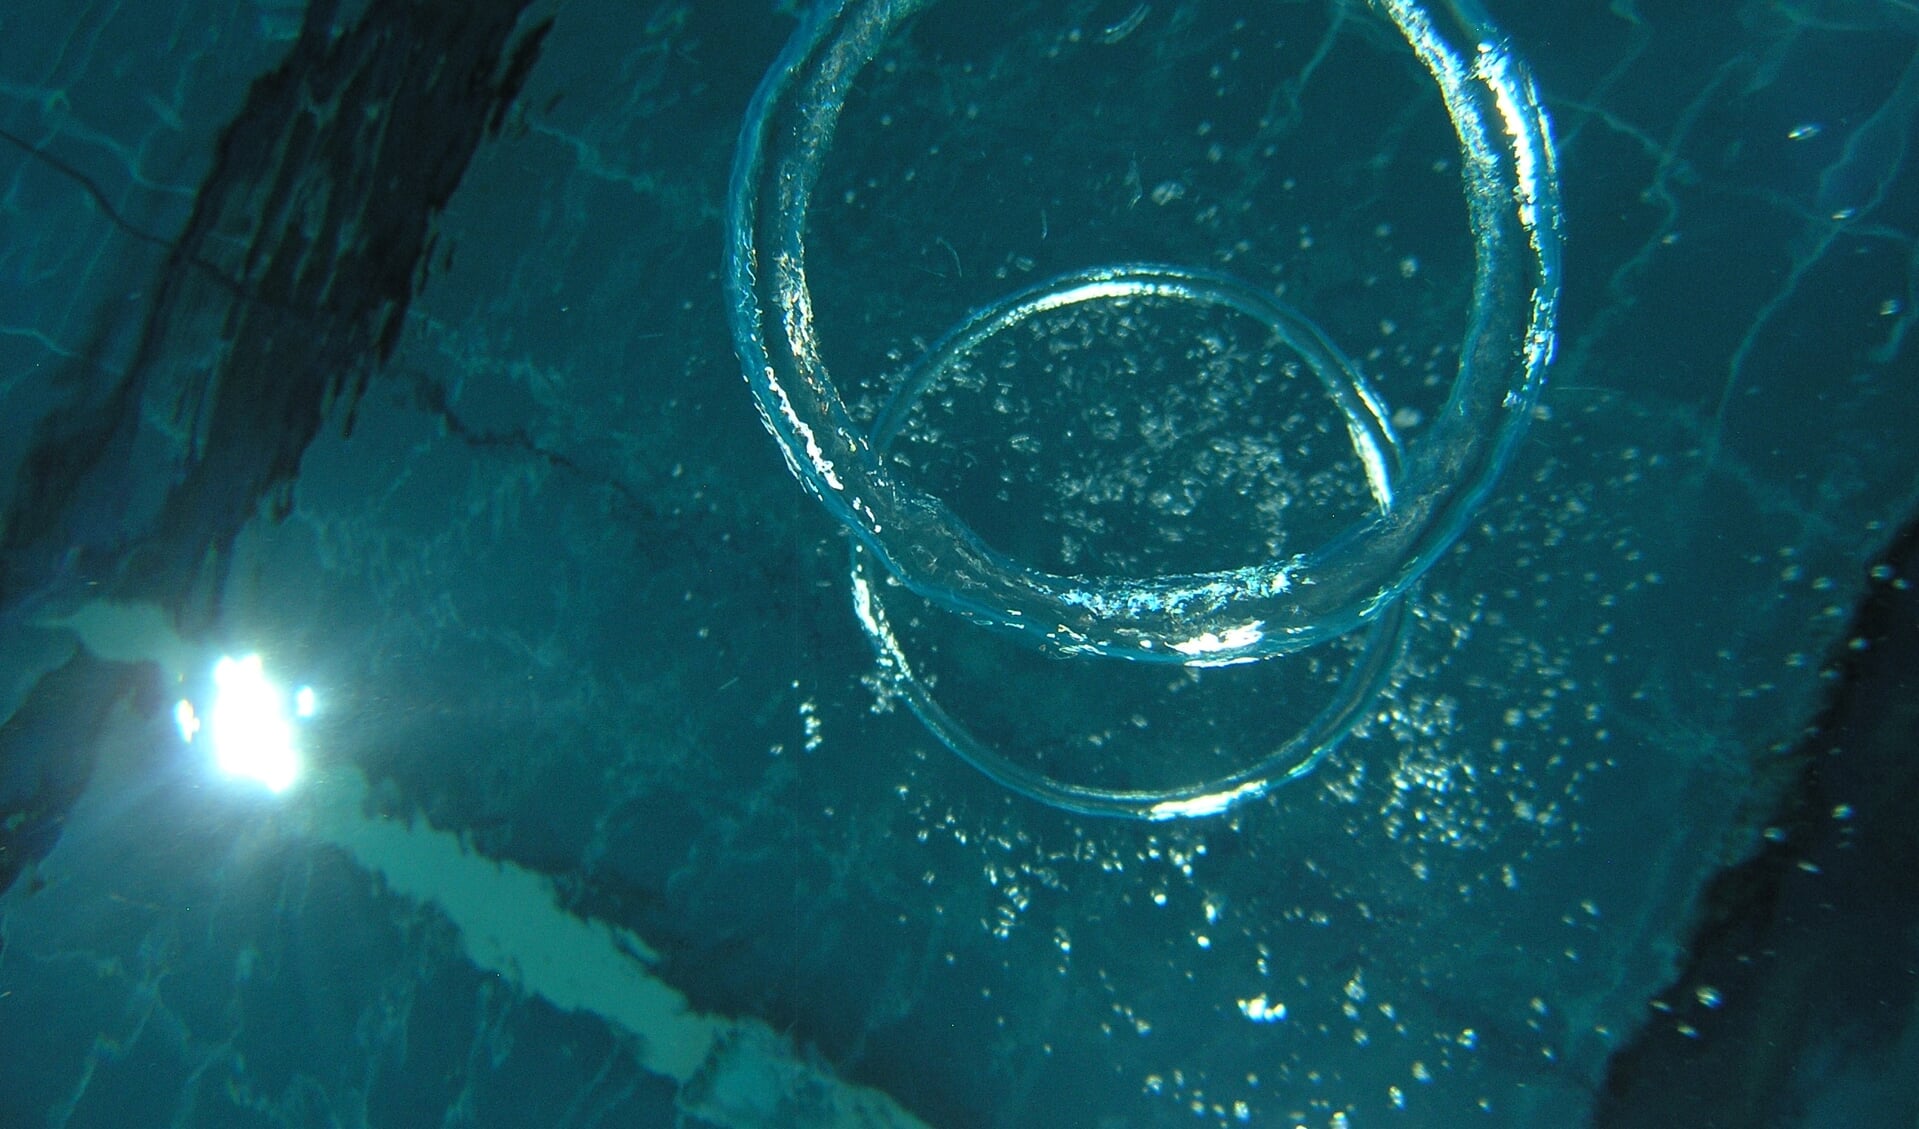 Leer ringen blazen onder water.